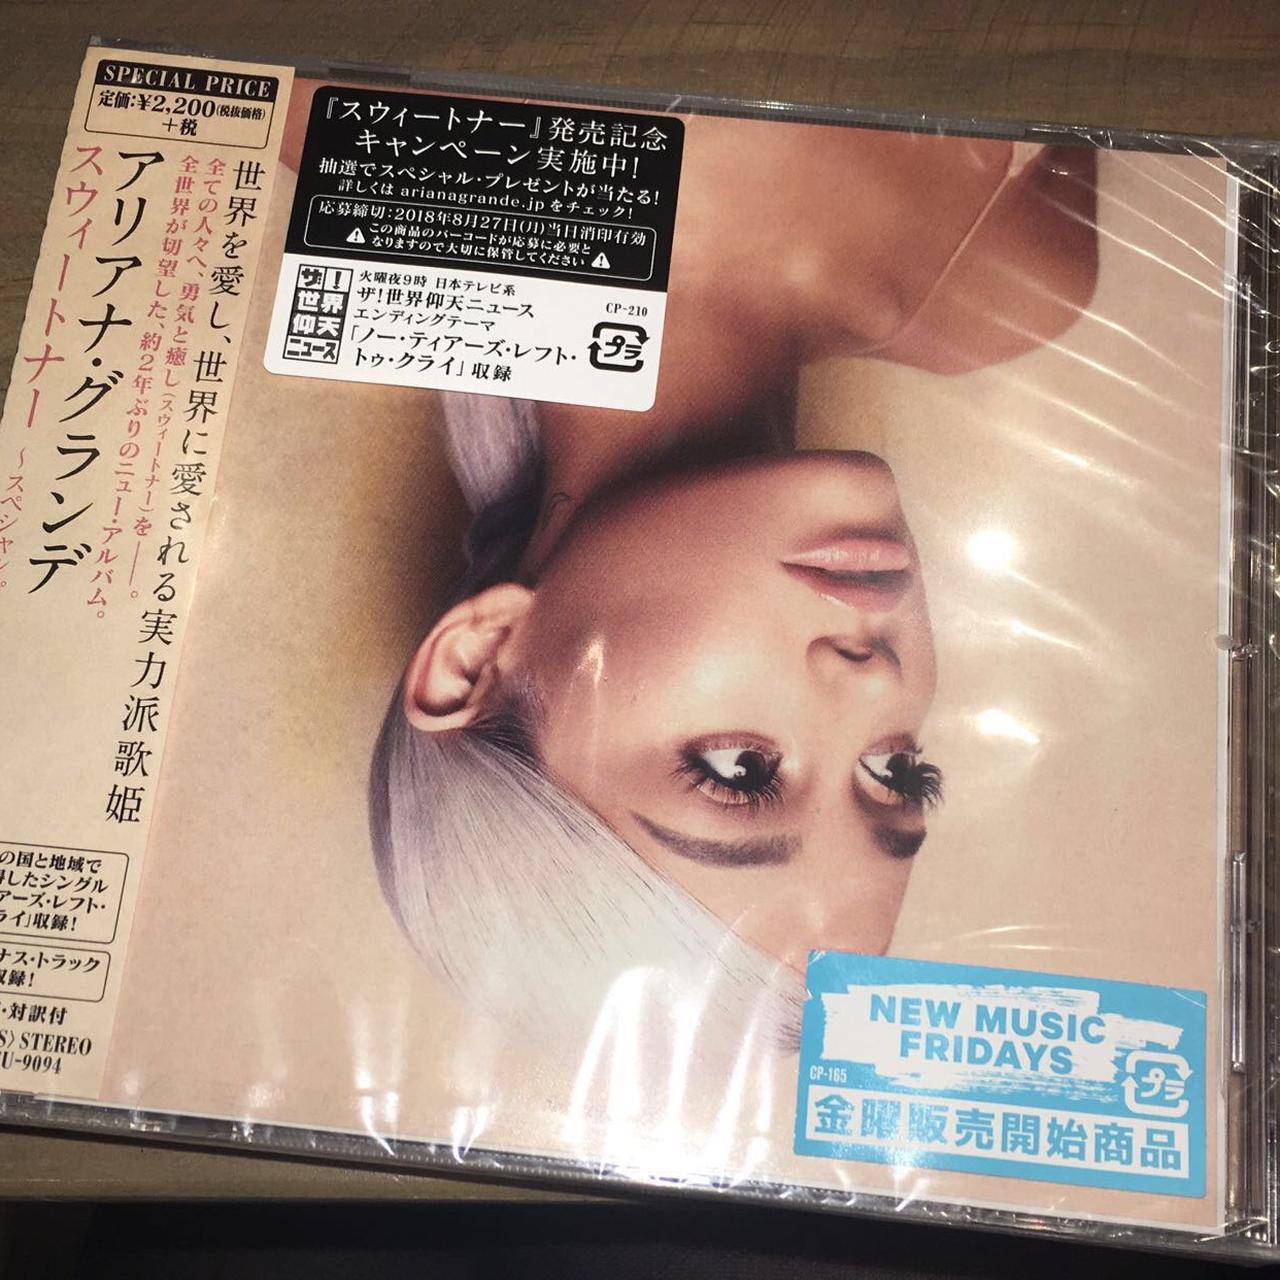 Ariana Grande - Sweetener (Limited) (incl. bonus material) - CD 